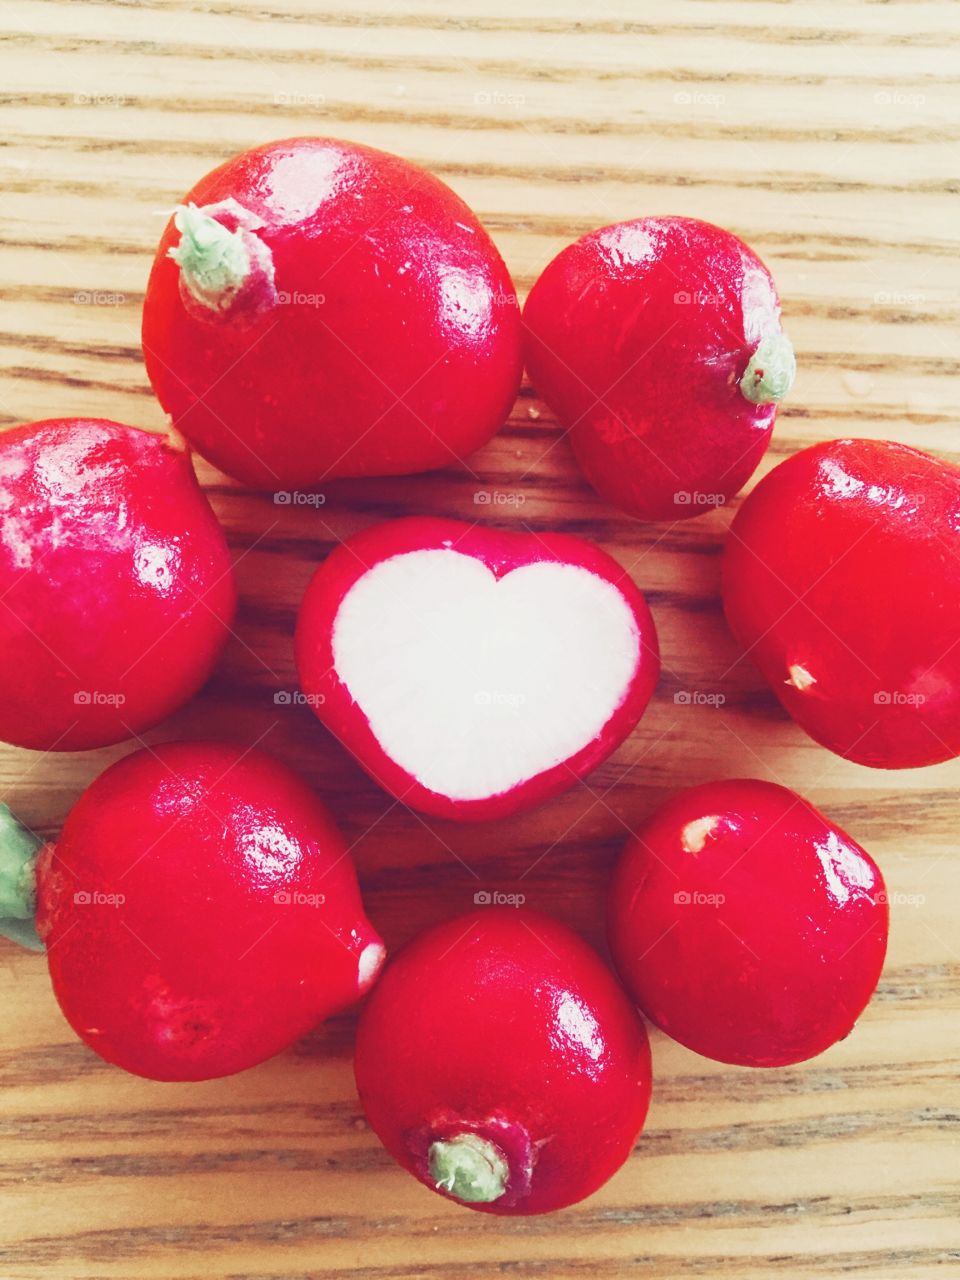 Heart shaped red radish